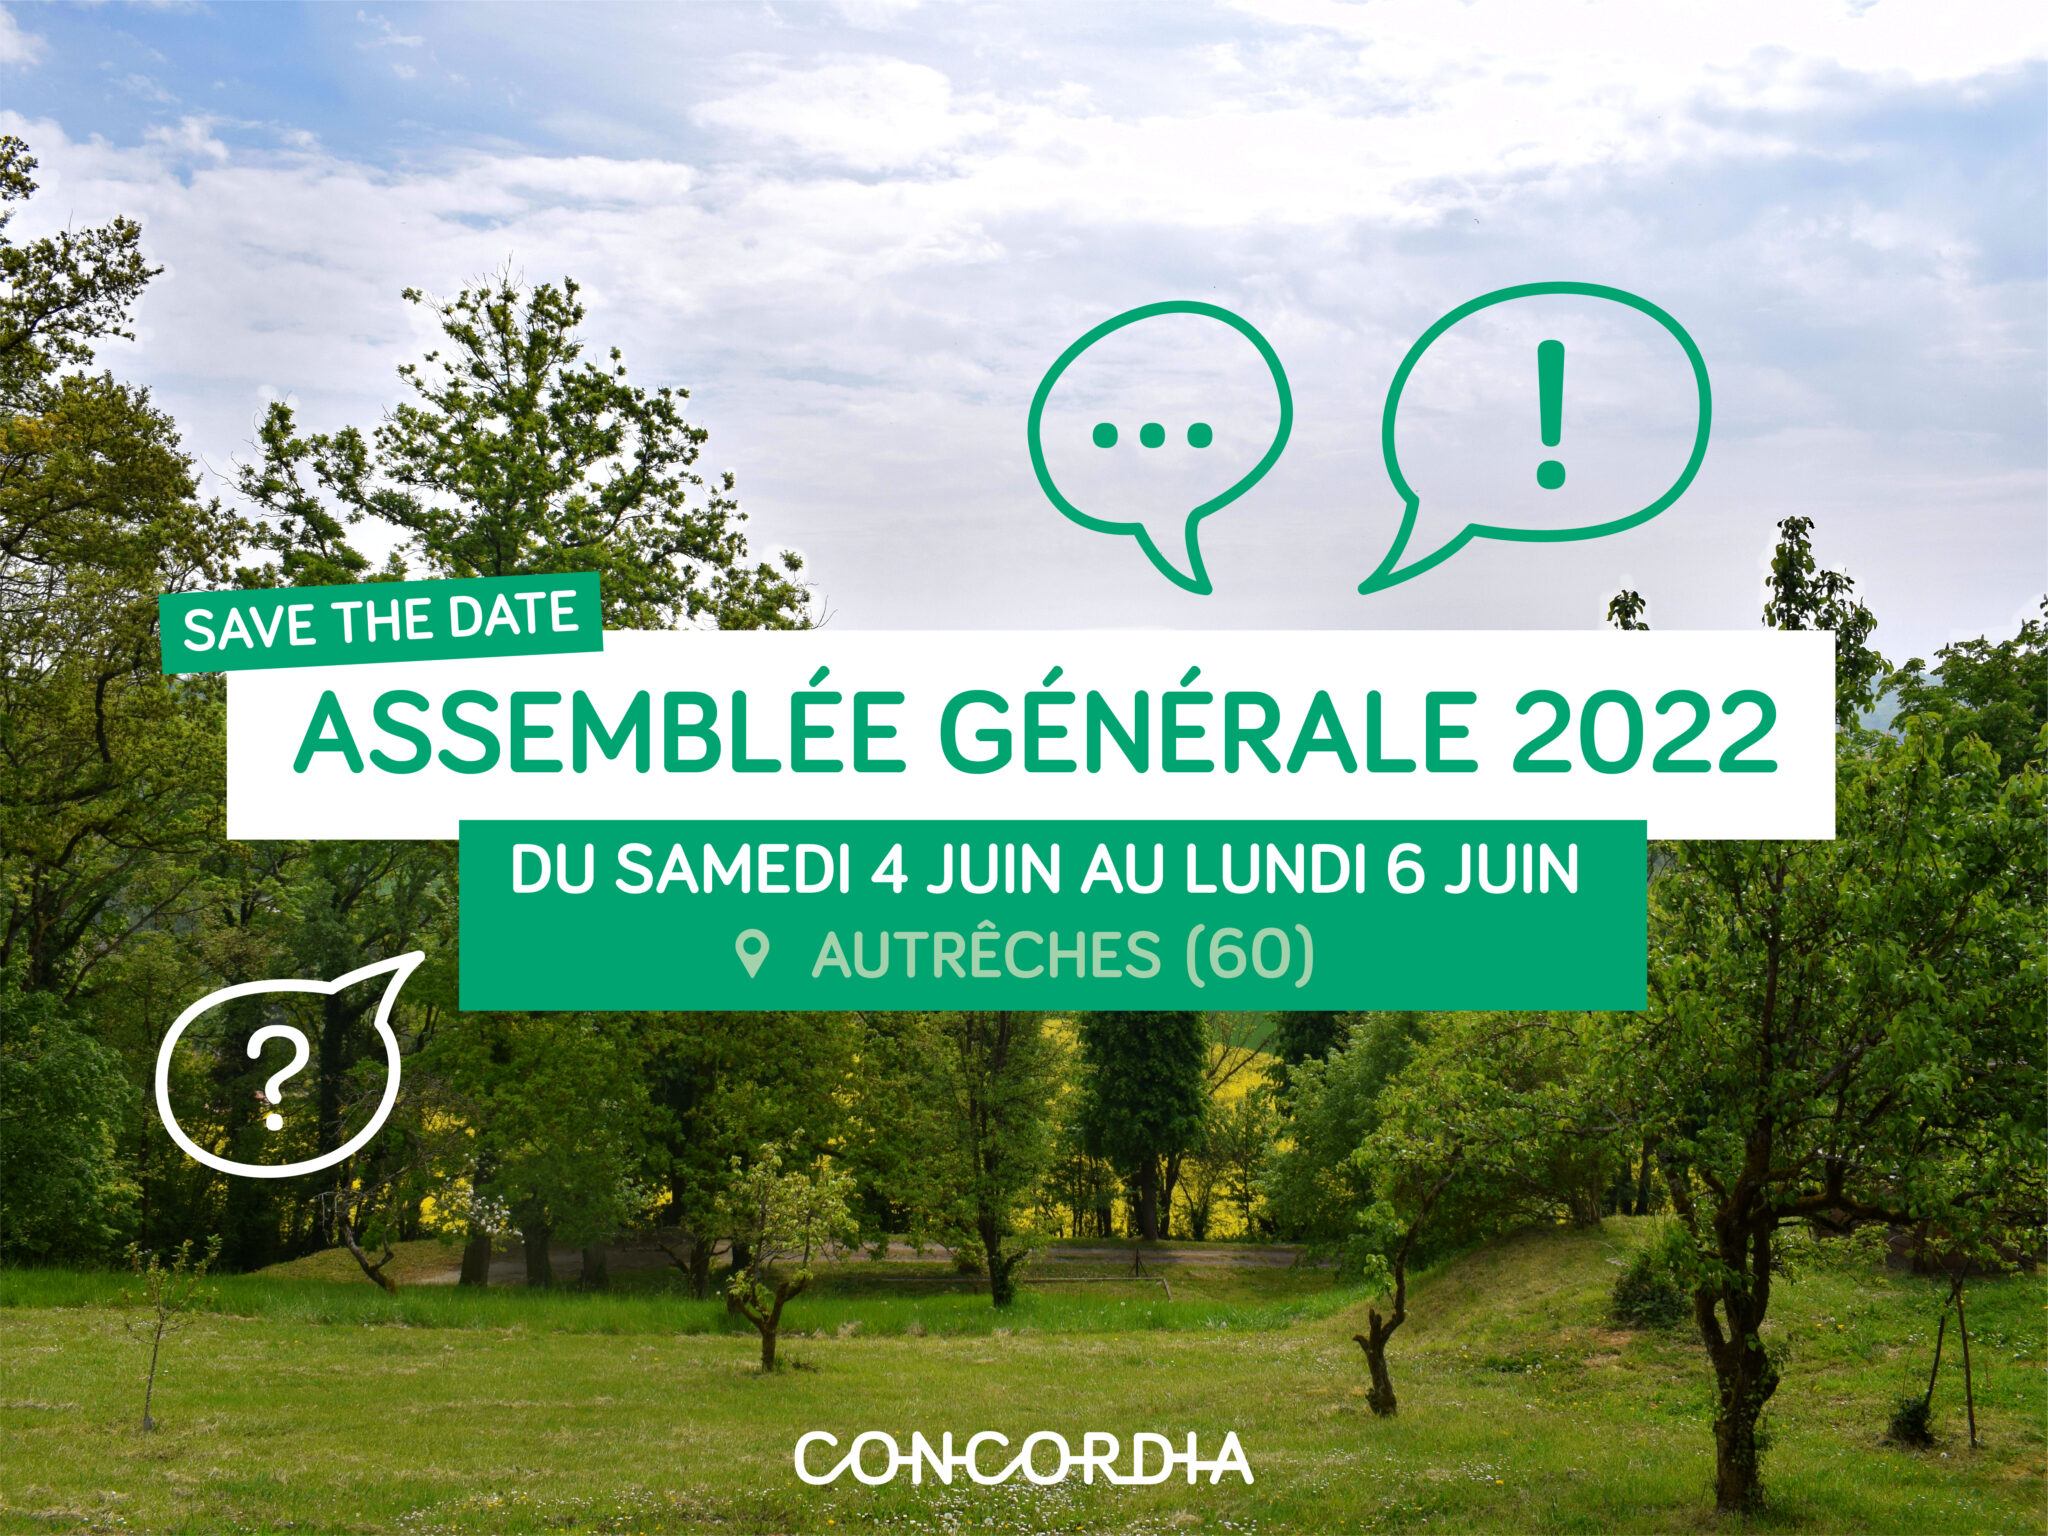 Concordia - À vos agendas – Du 4 au 6 juin, c’est l’Assemblée Générale de Concordia !